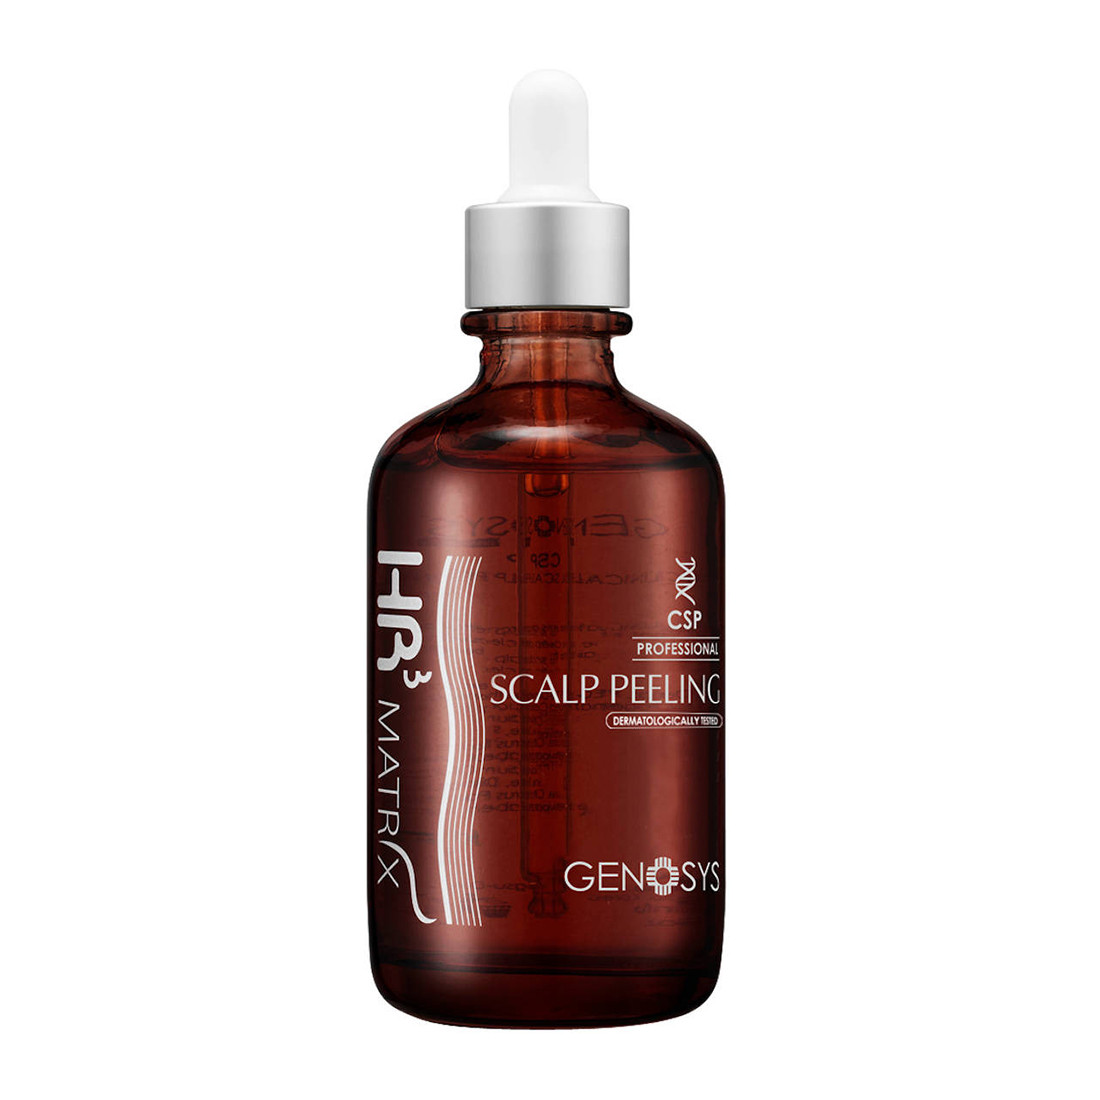 Отзывы о Genosys HR3 Matrix Scalp Peeling (CSP) Пилинг для кожи головы